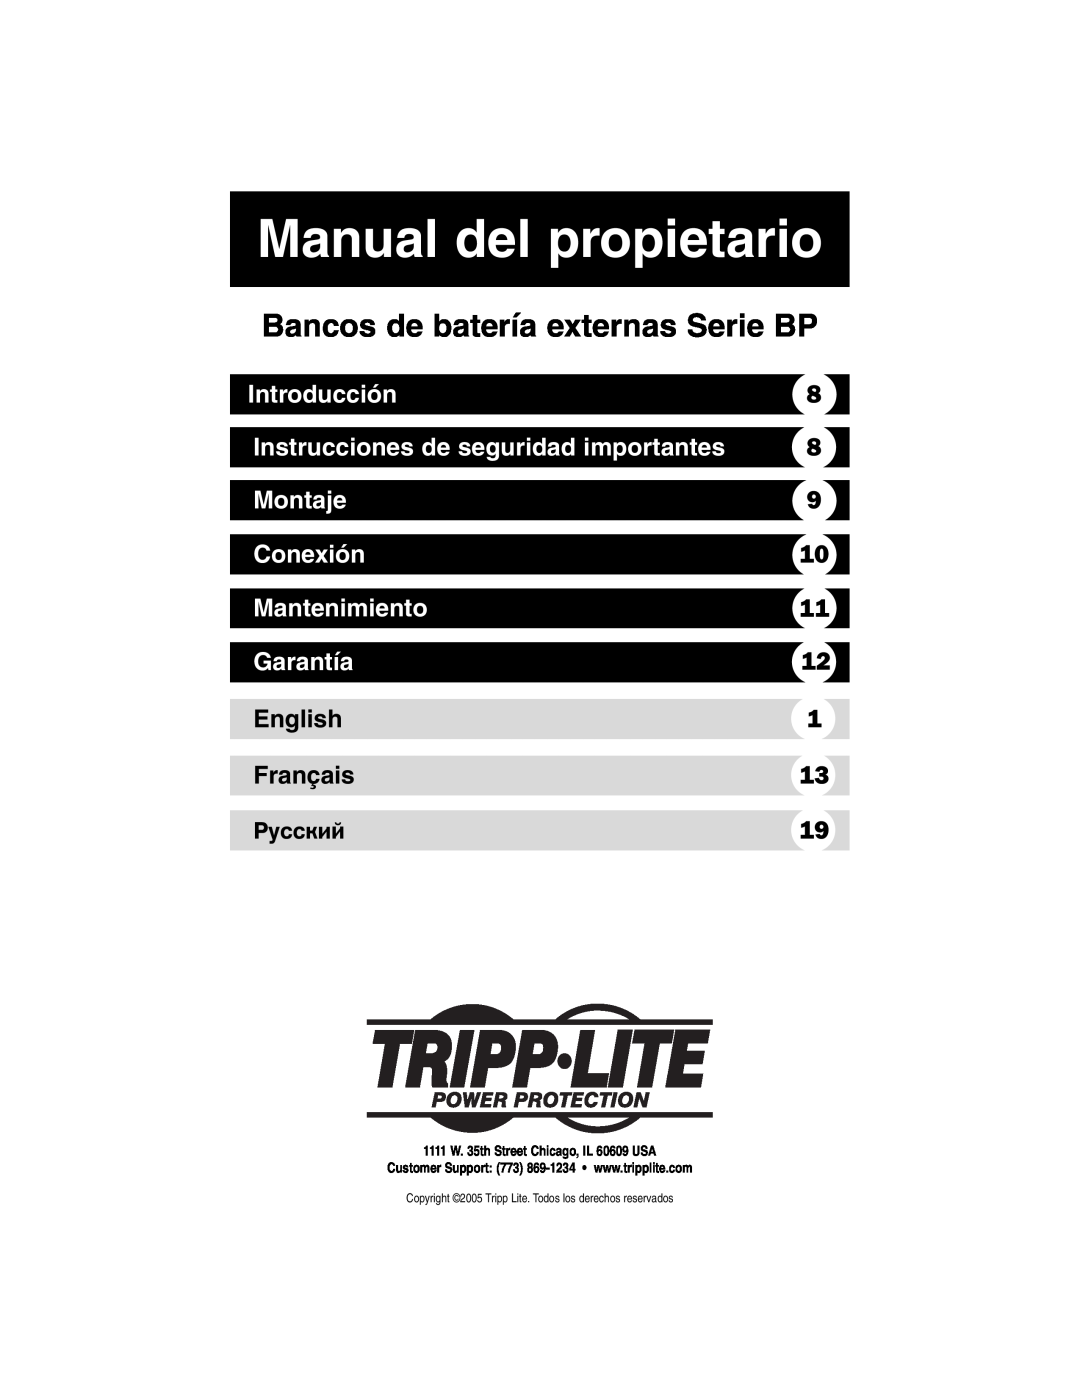 Tripp Lite Single-Phase 10kVA Manual del propietario, Bancos de batería externas Serie BP, Introducción, Mantenimiento 